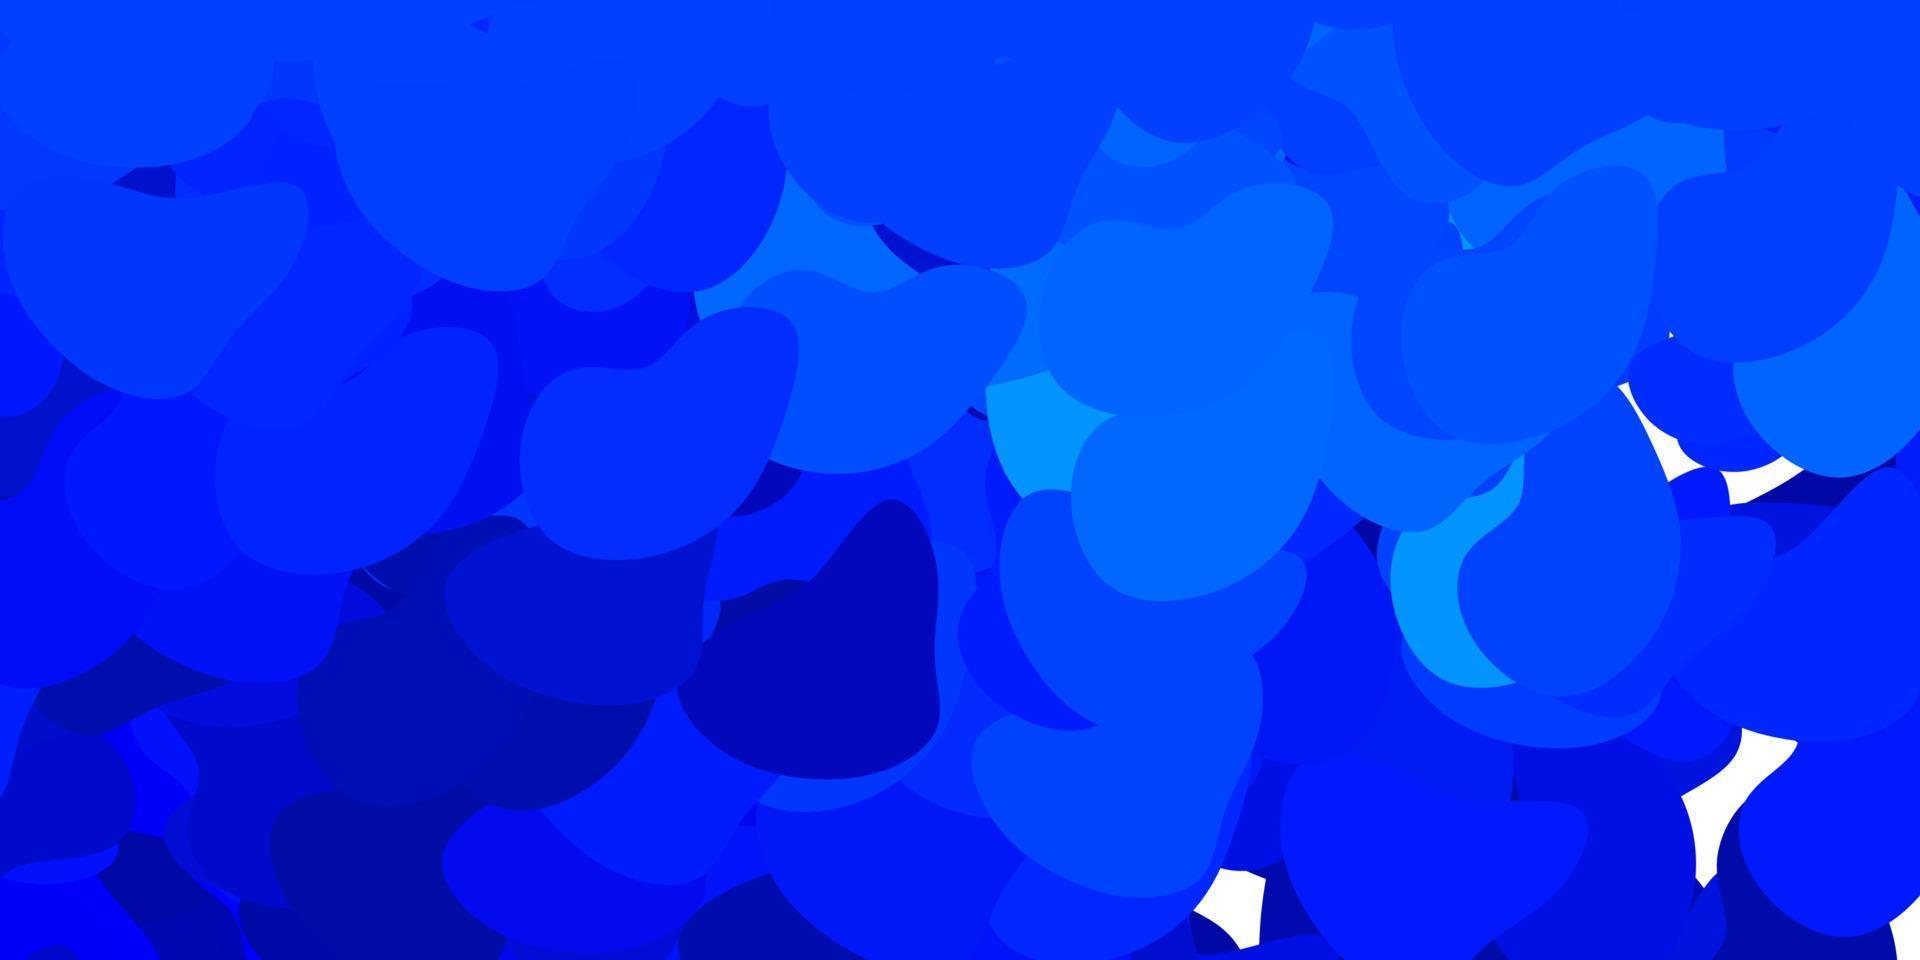 sfondo vettoriale blu scuro con forme casuali.